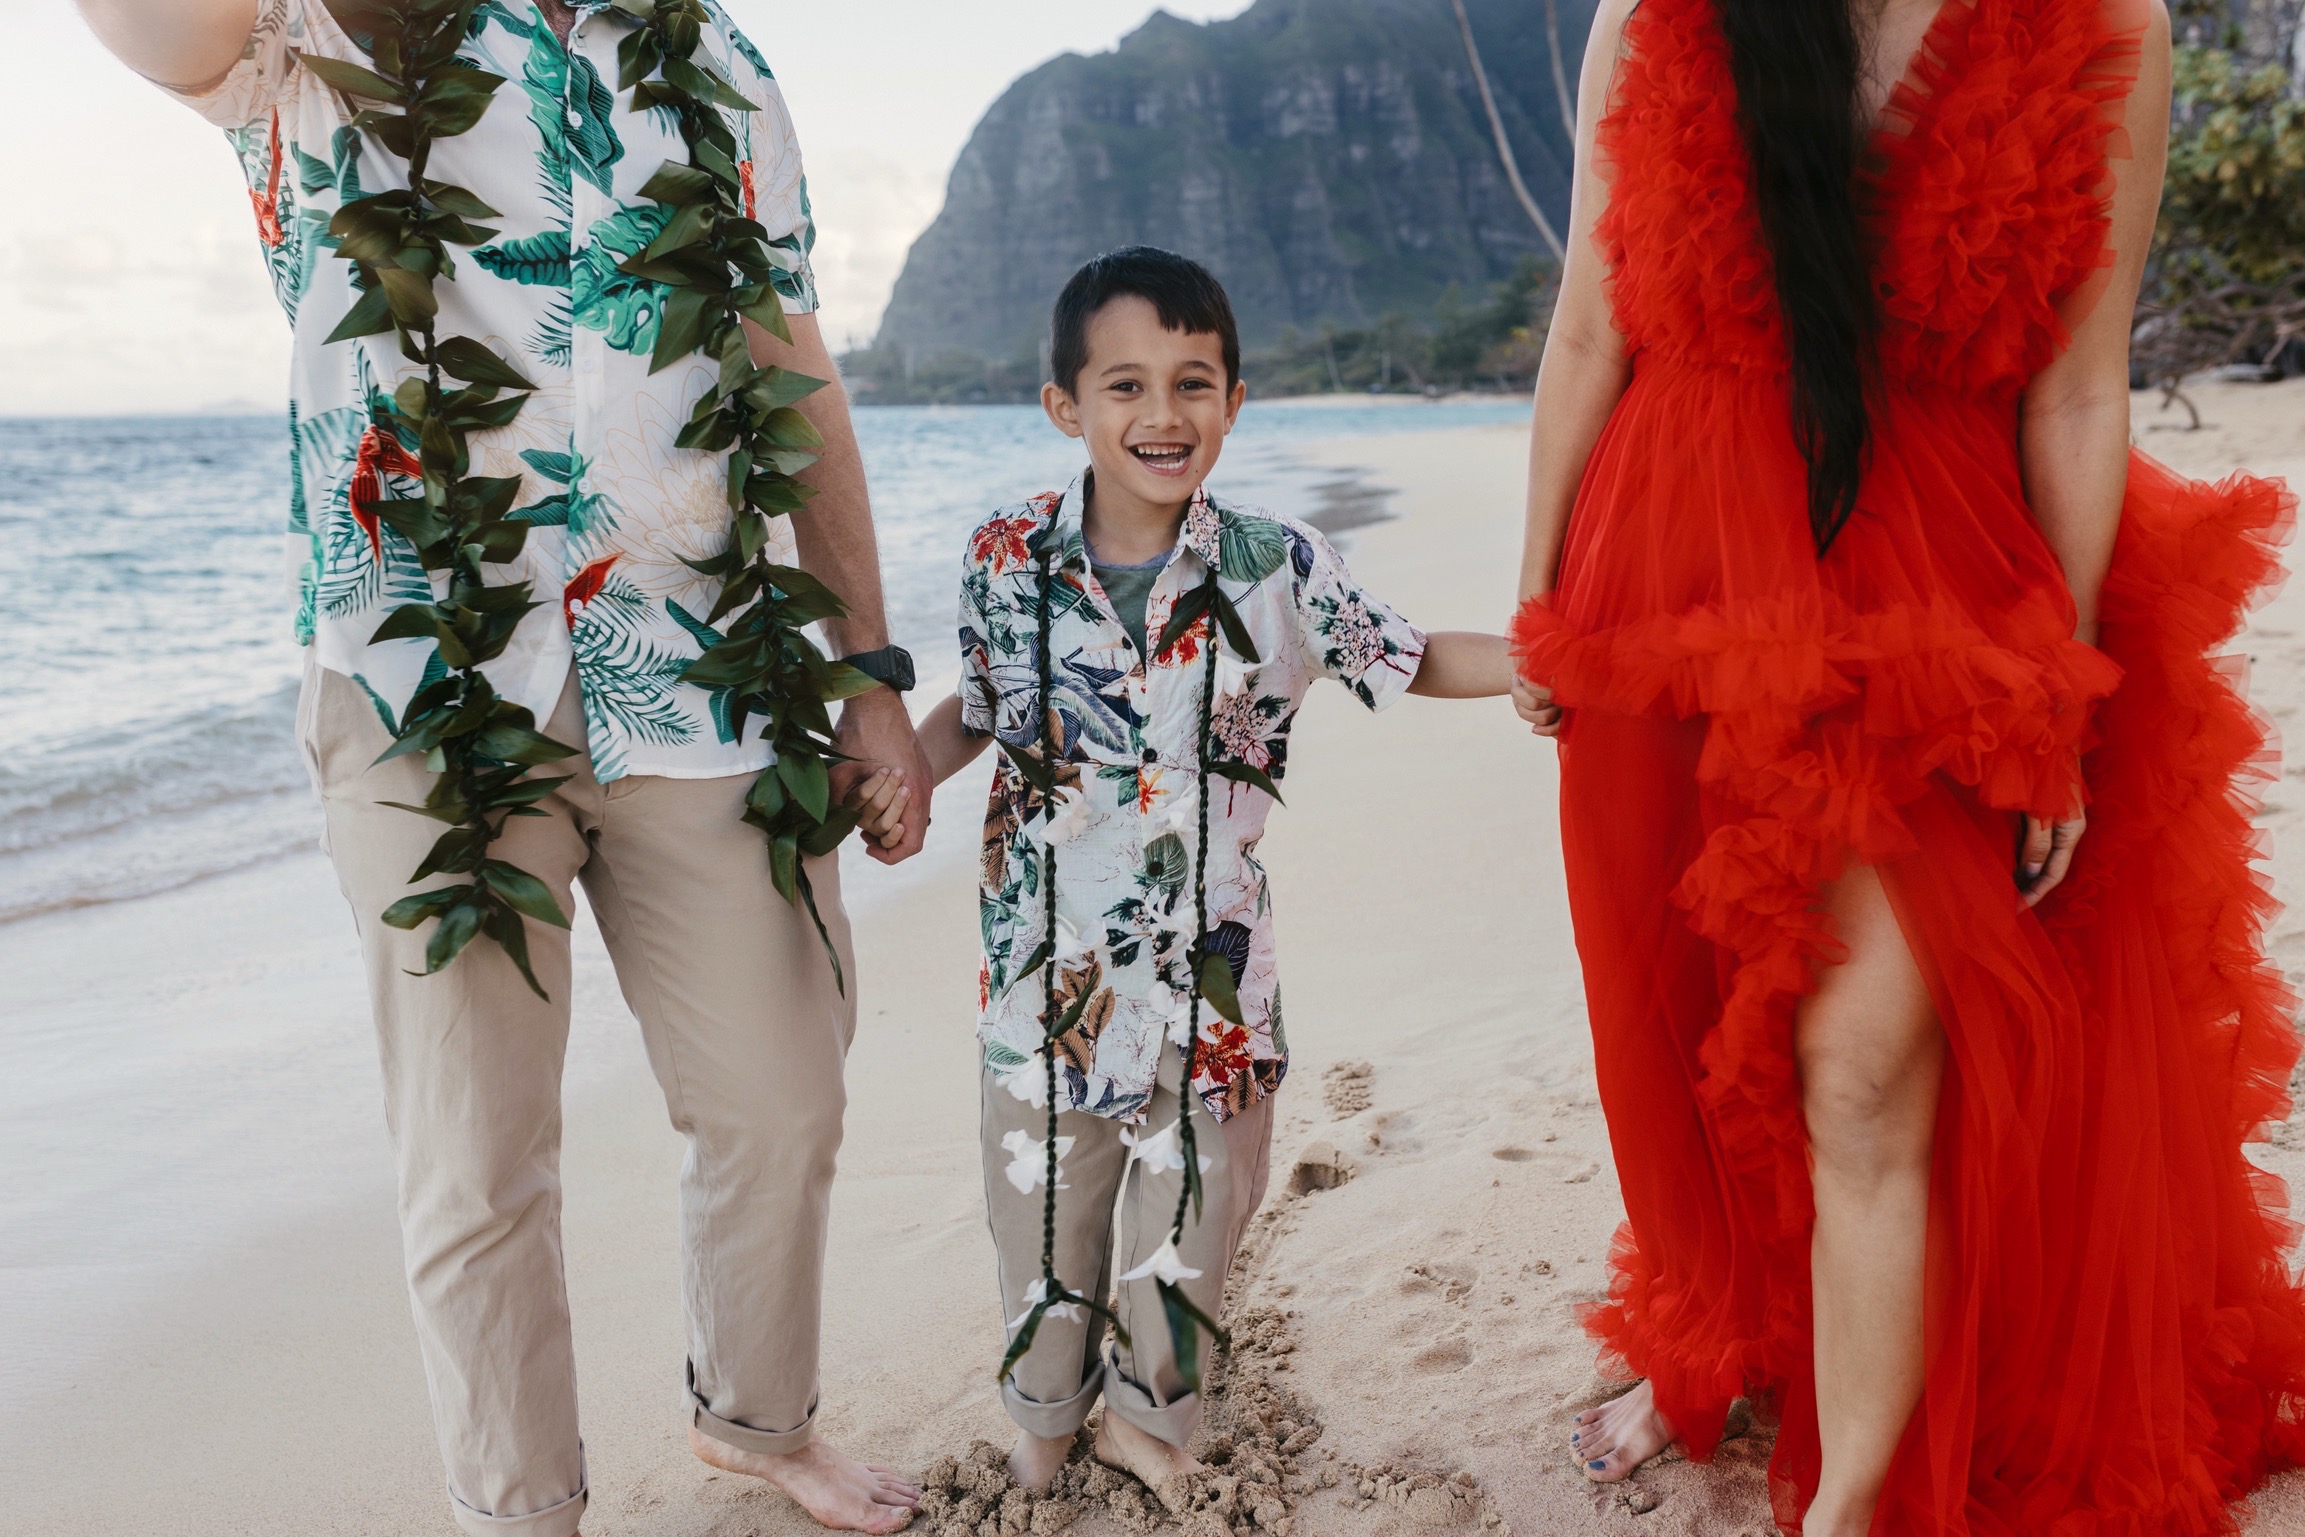 Hawaii family beach photoshoot, Oahu, family photography, travel photography 